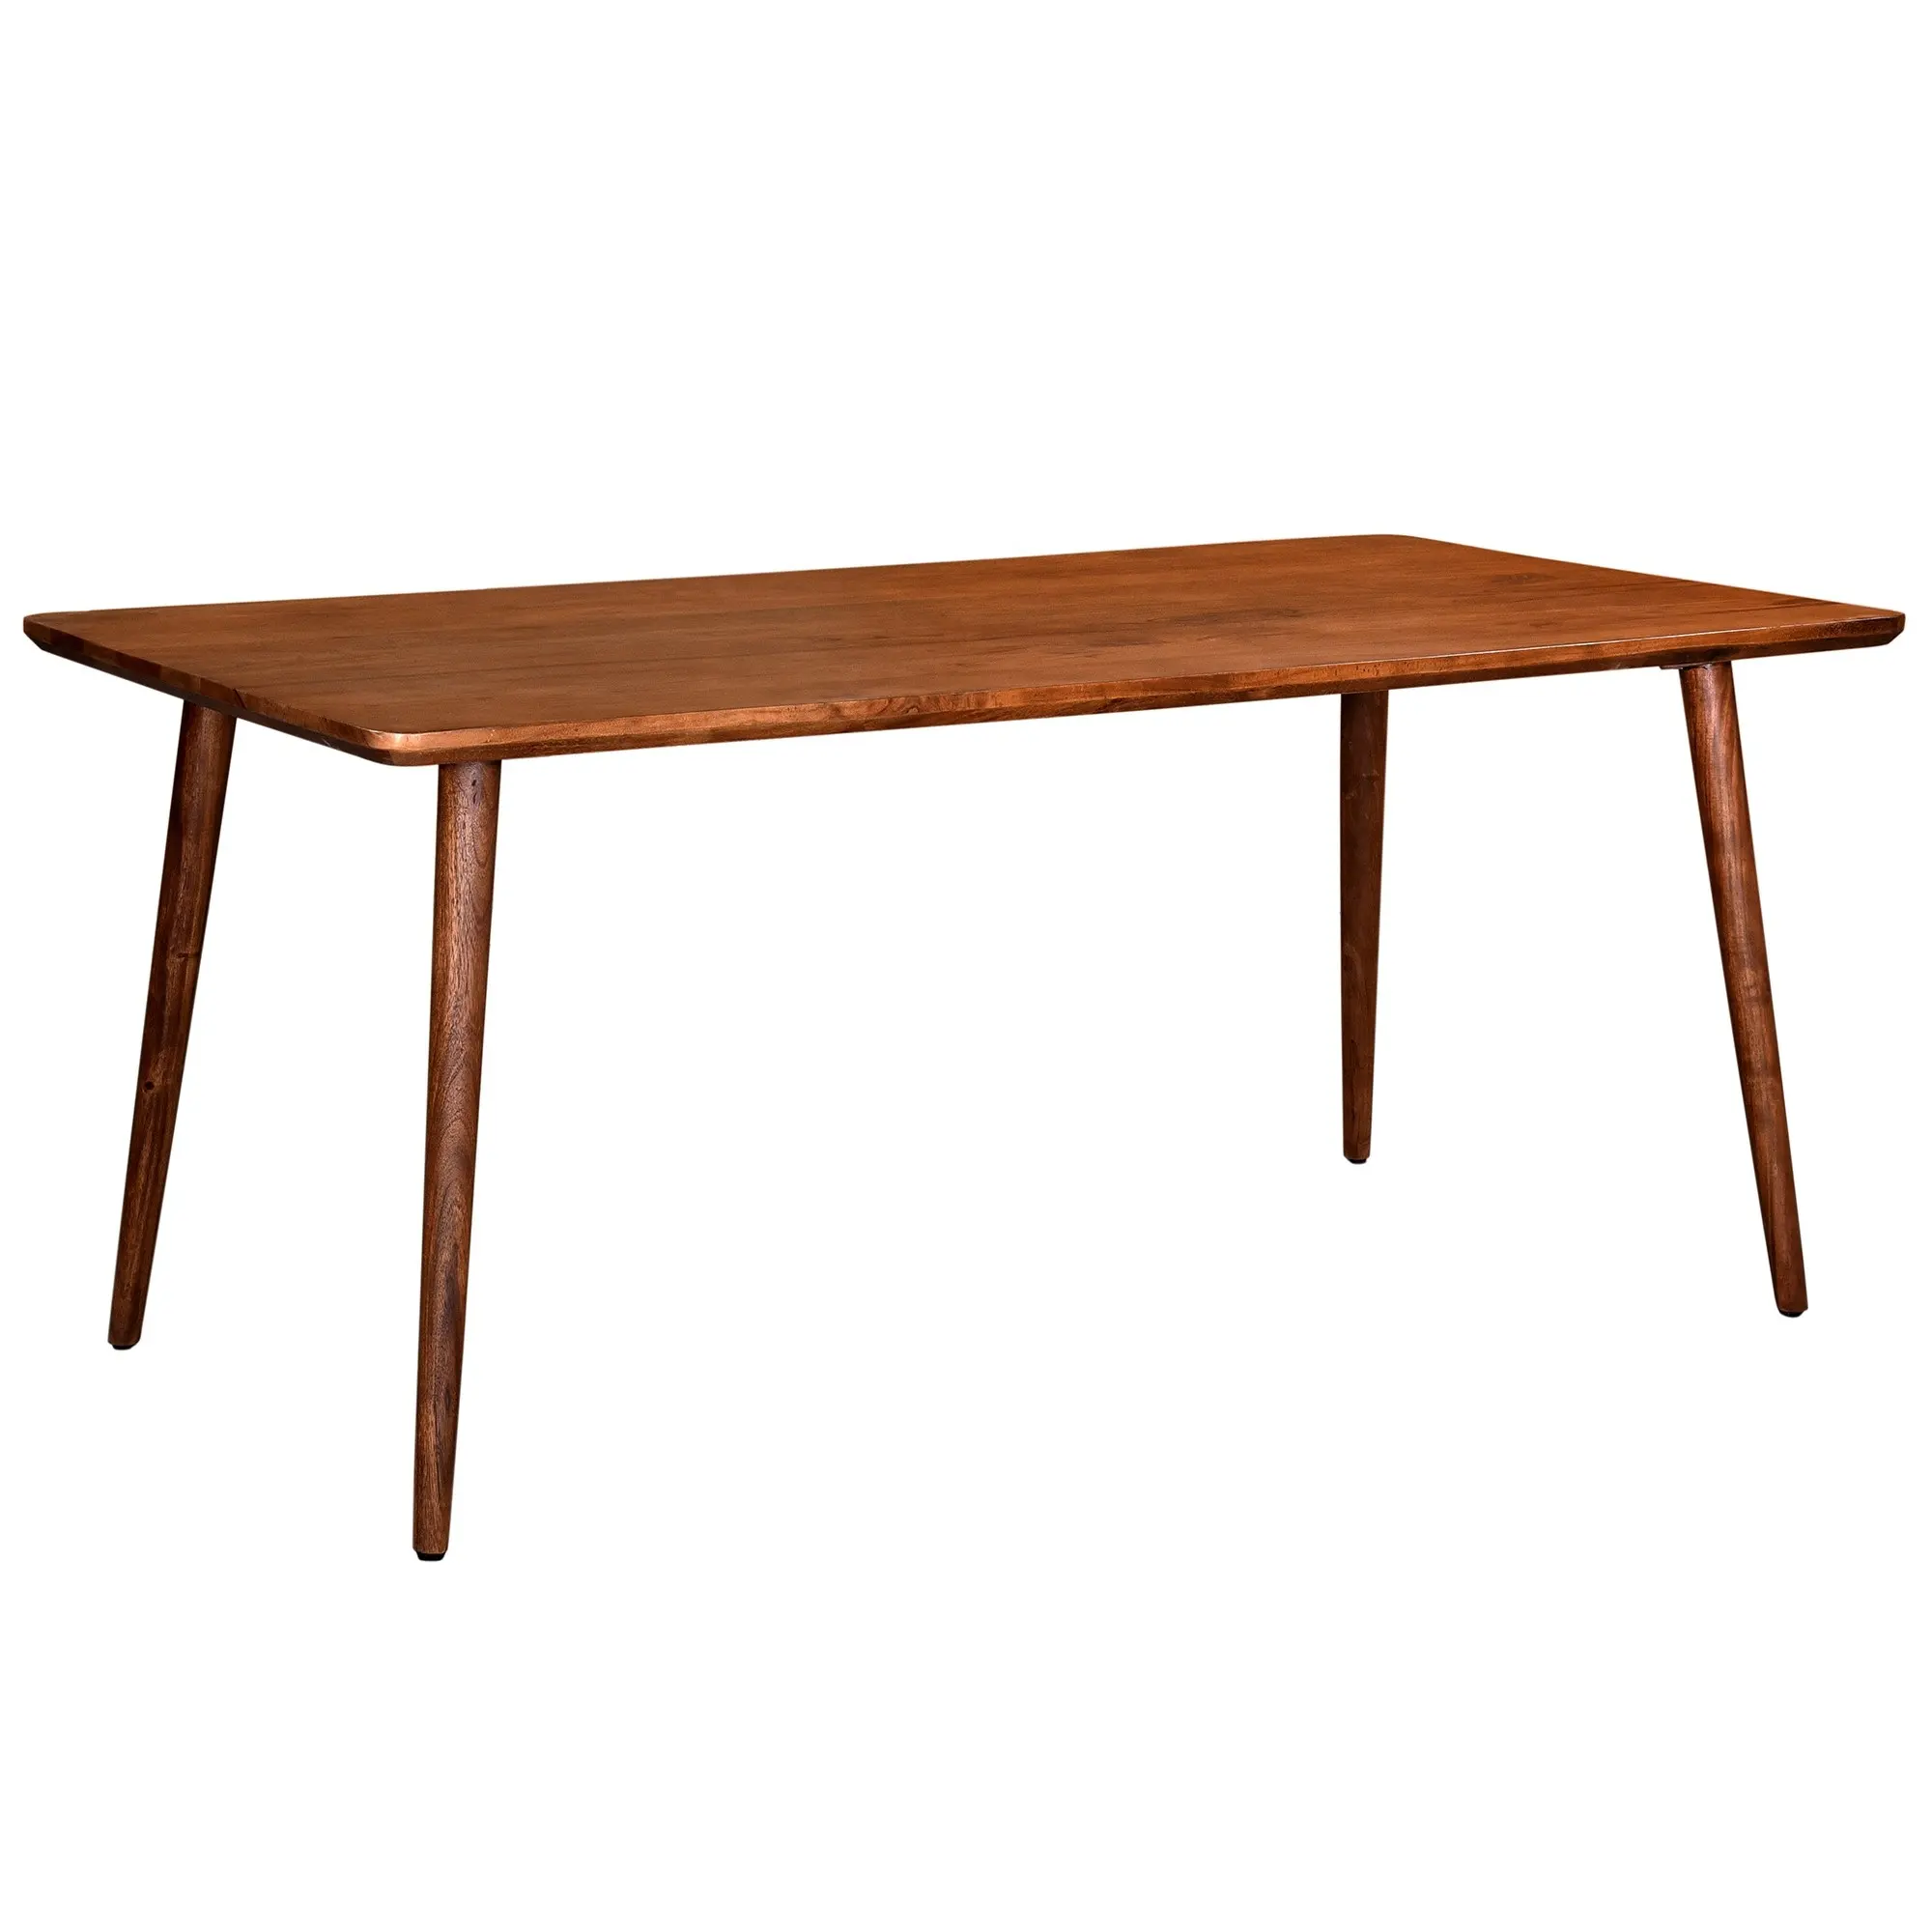 Venta al por mayor muebles de comedor mesa de comedor cuadrada de cristal con patas de madera muebles para el hogar moderno